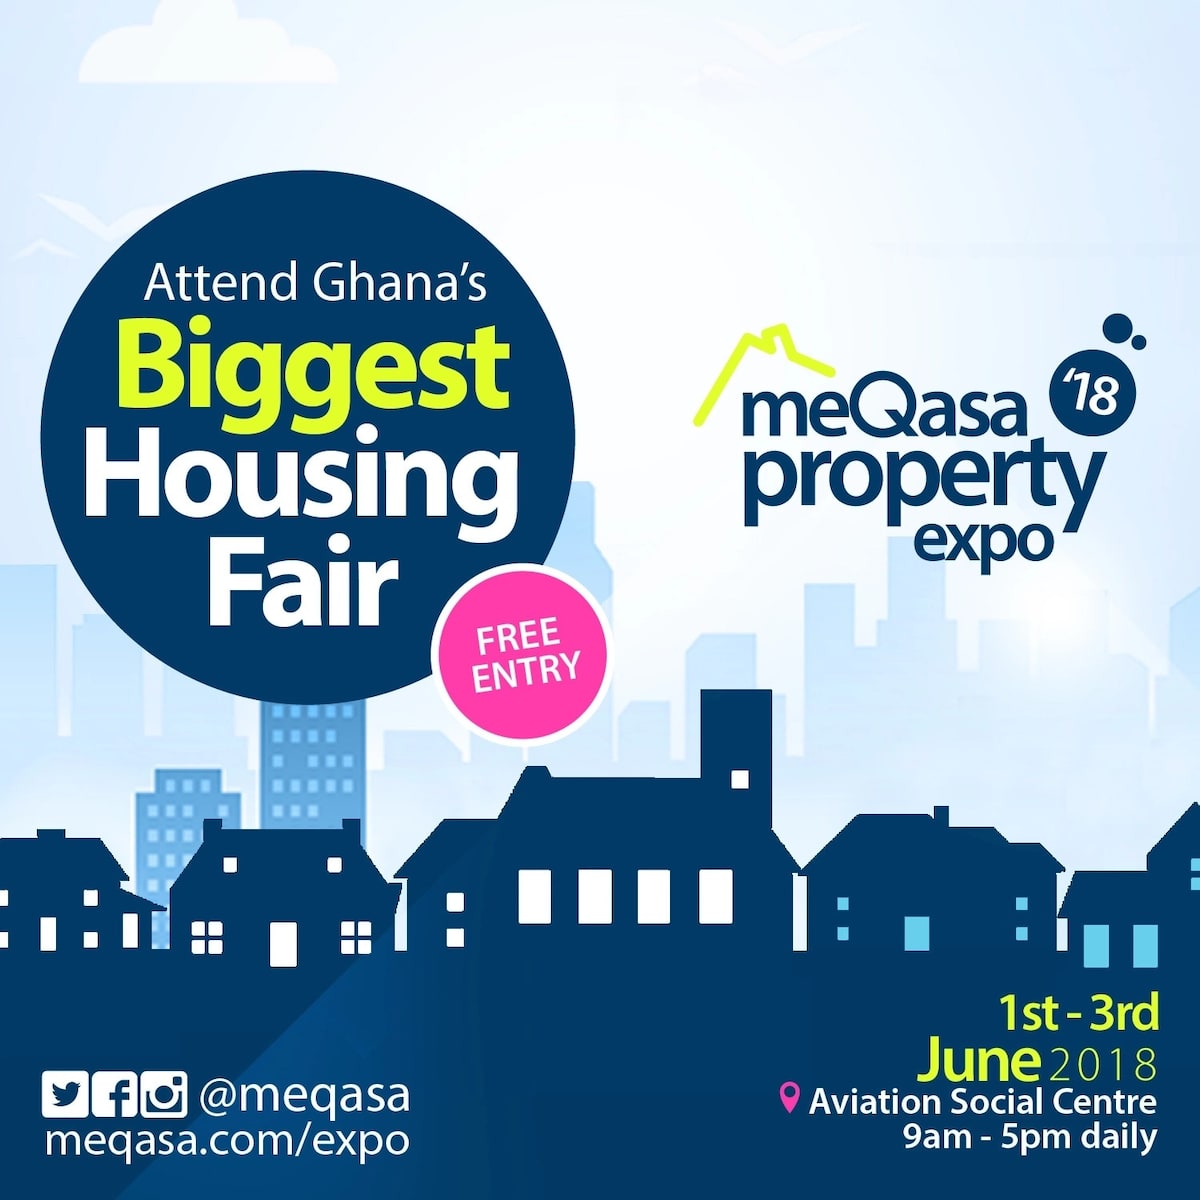 meQasa to host Ghana's biggest Housing Fair in June